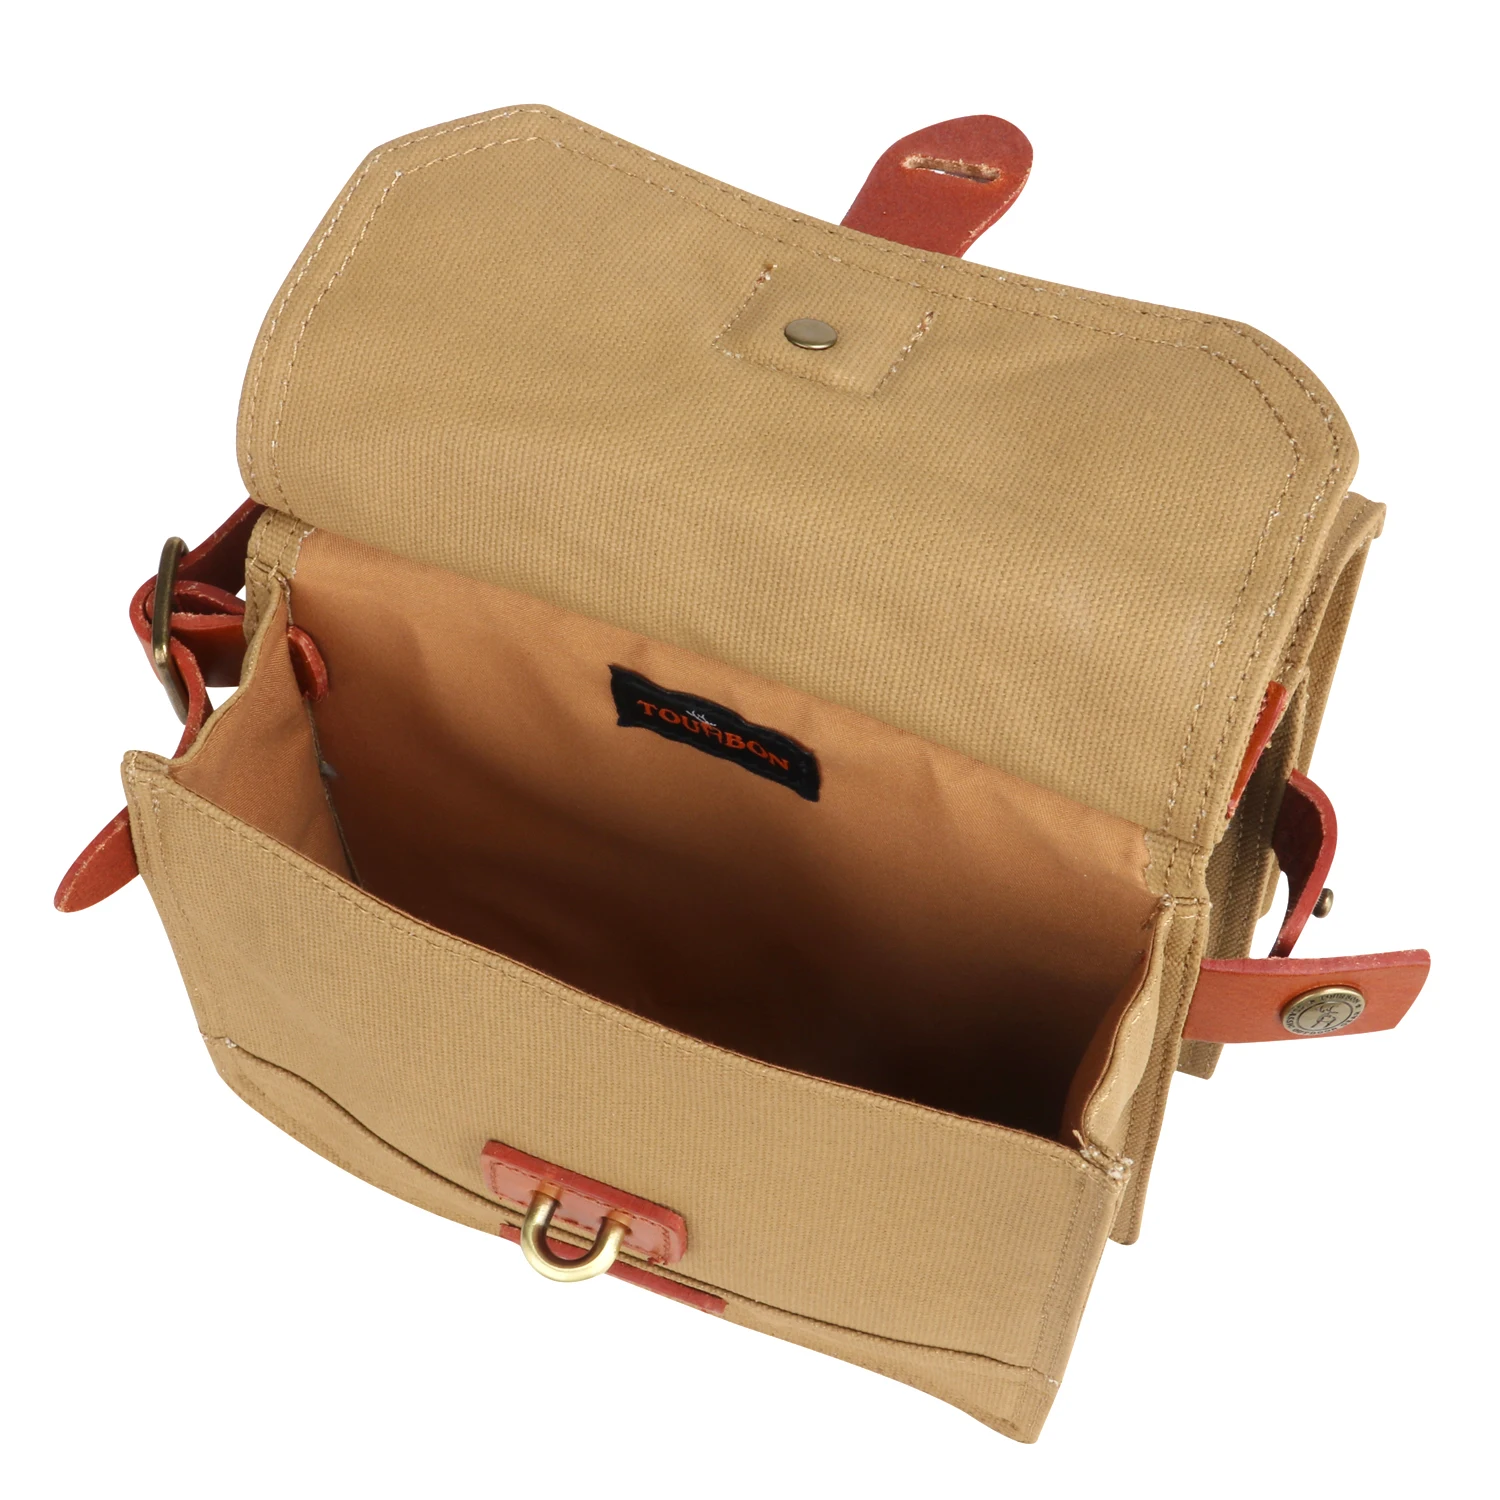 Tourbon винтажная сумка для трубки велосипедной рамы, сумка для переноски велосипеда, велосипедная сумка с креплением на руль, премиум-чехол для ручки цвета хаки, восковая парусина, водонепроницаемая